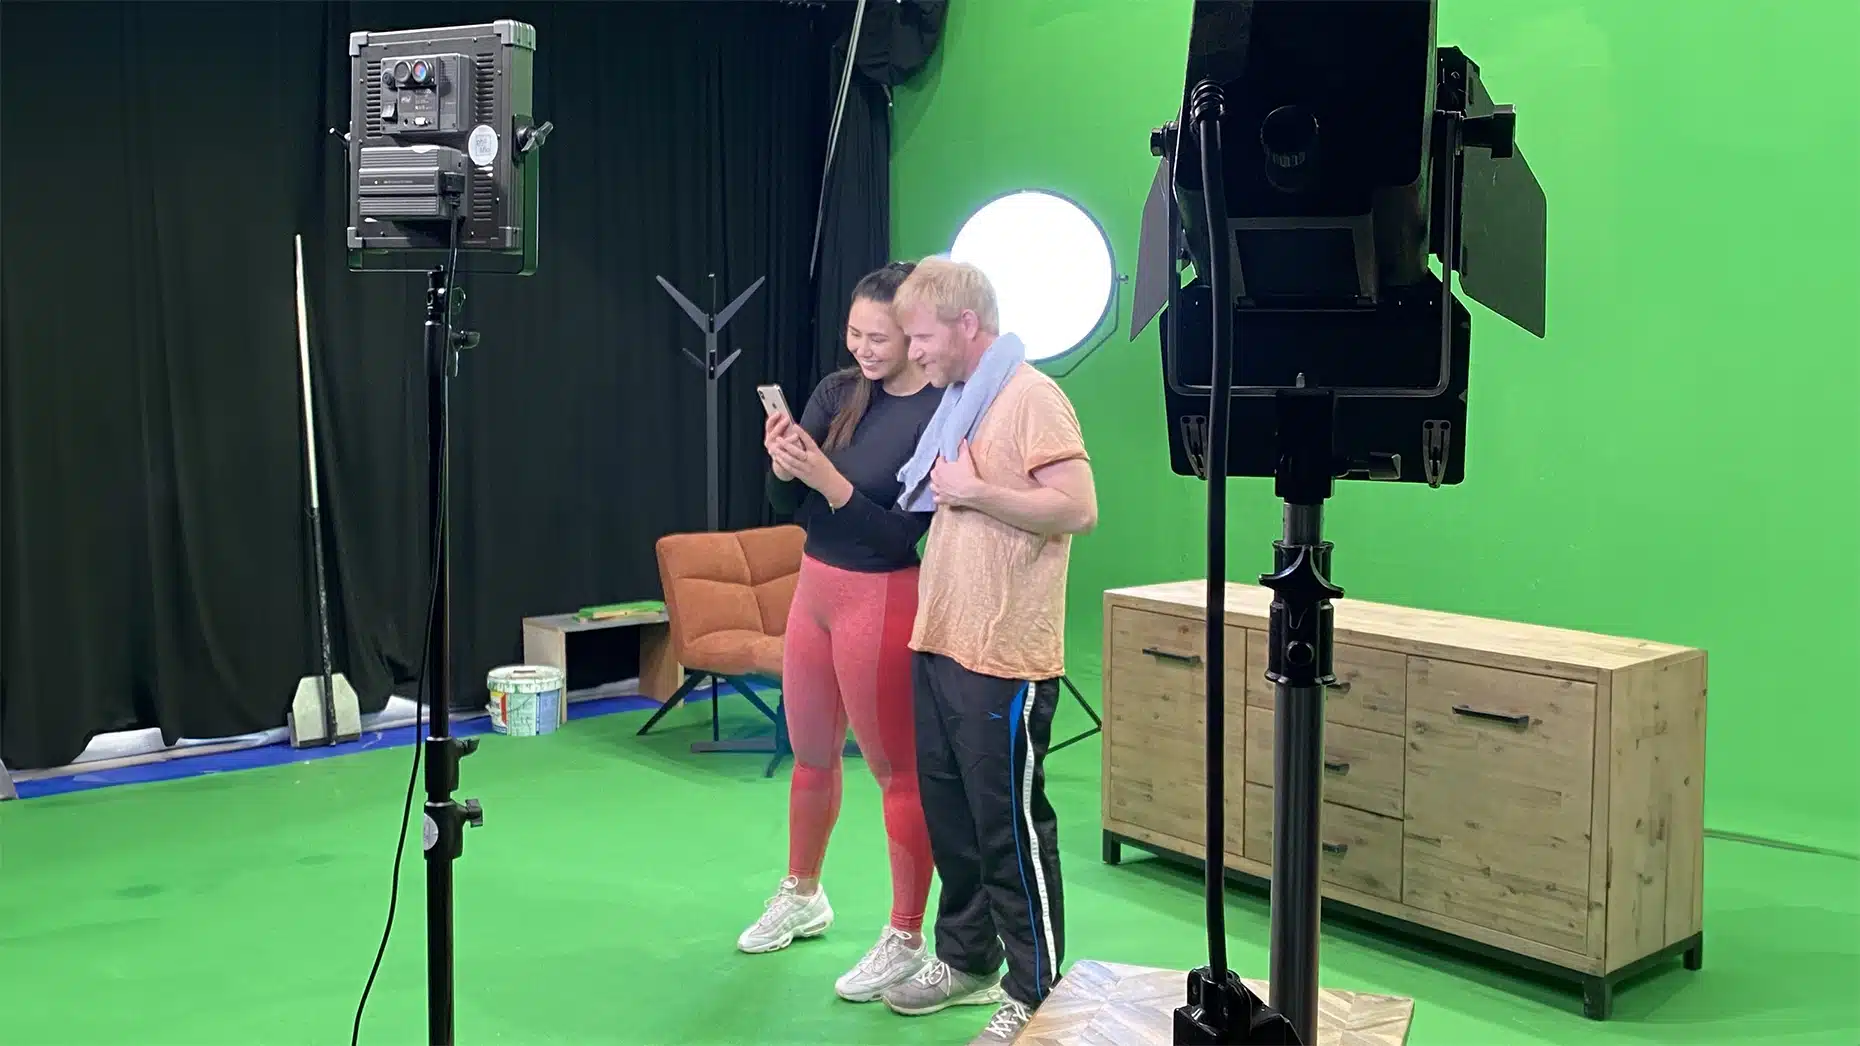 Een meisje en jongen in sportkleding staan in een green screen studio naast elkaar en lachen naar de mobiele telefoon die het meisje vast heeft